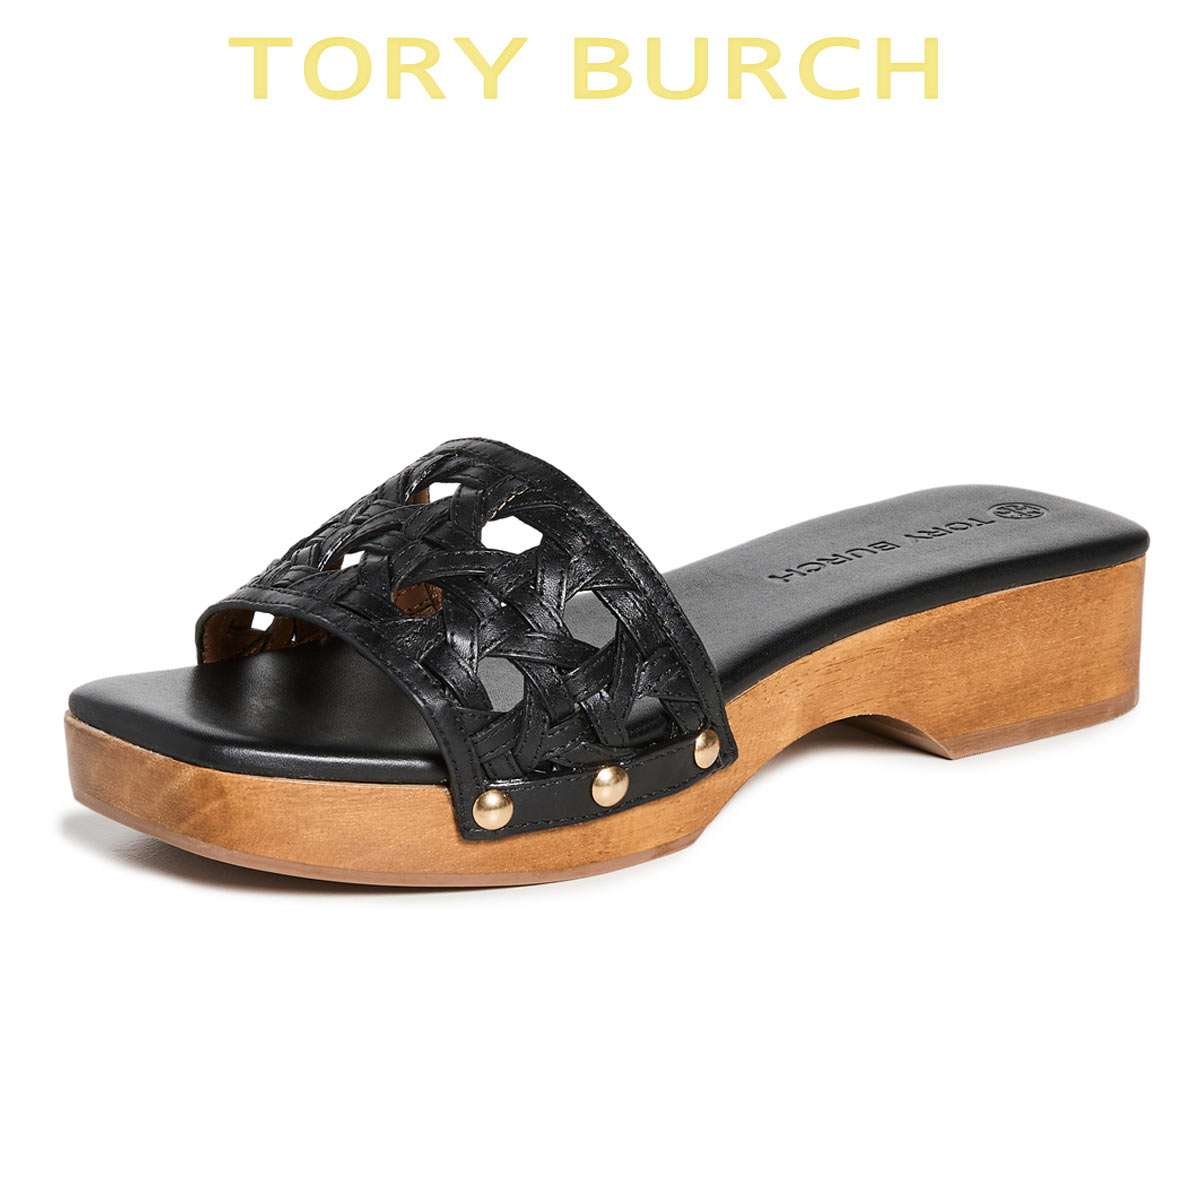 トリーバーチ サンダル レディース つっかけ 歩きやすい 人気 靴 ブランド 大きいサイズあり Tory Burch